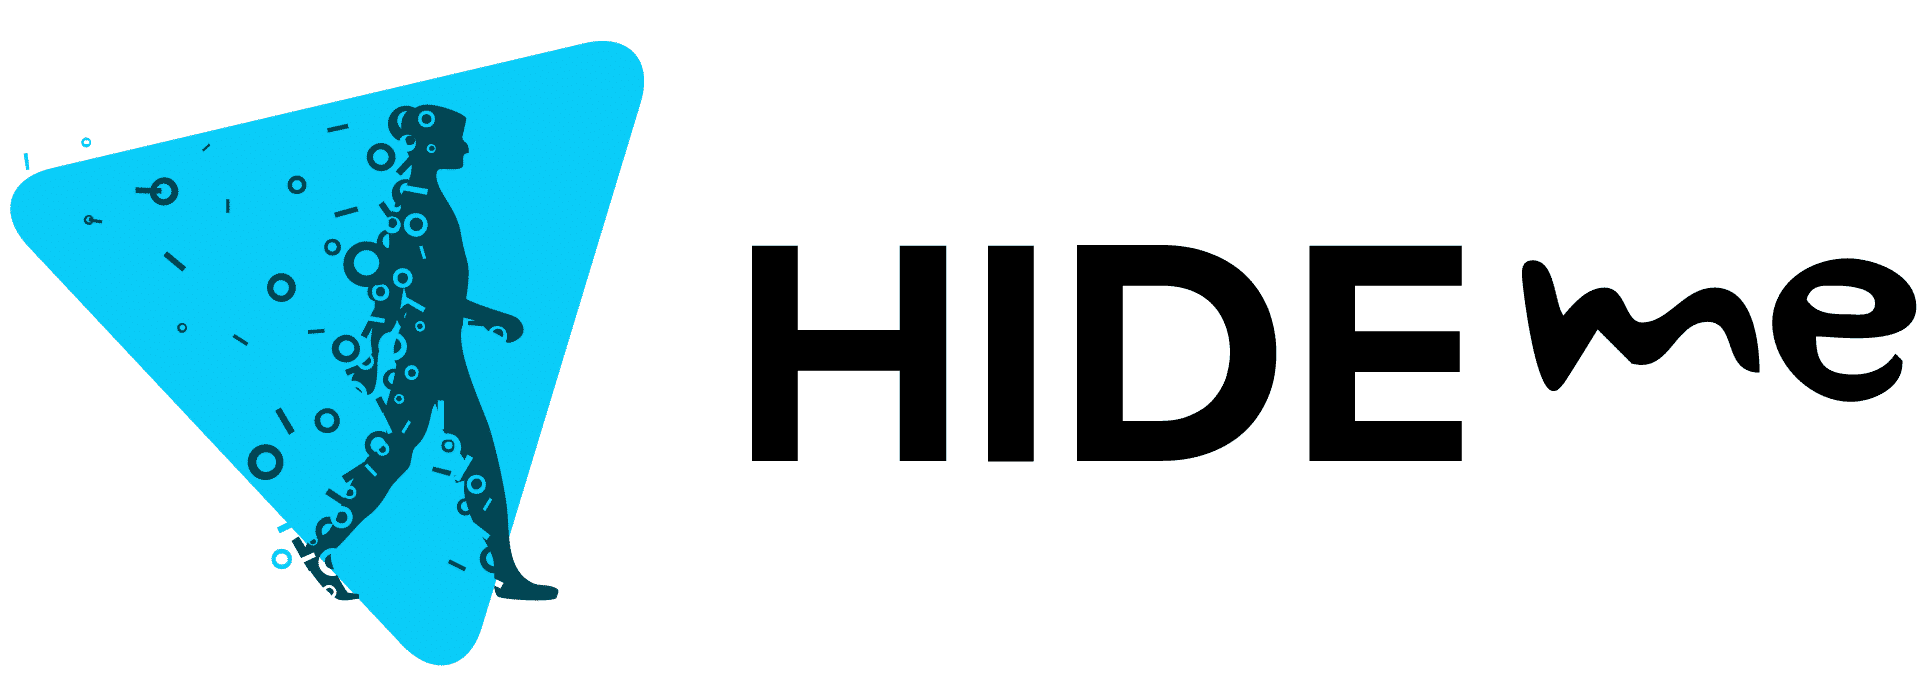 Hide.me - Windscribe Free Alternatives